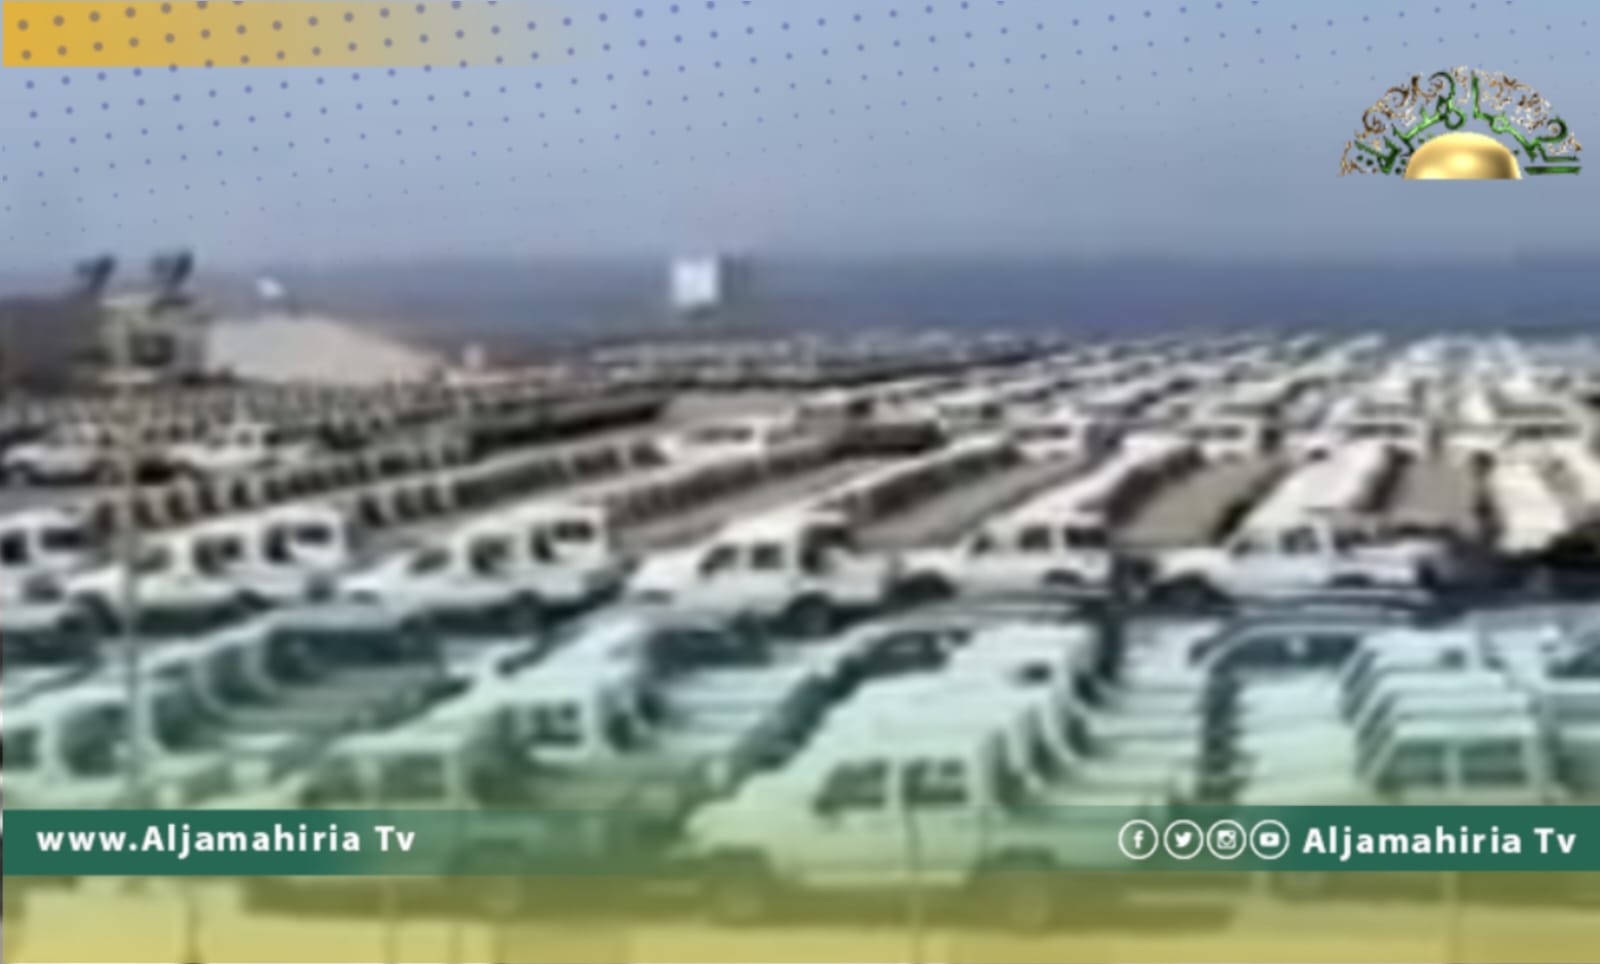 بالفيديو// الالاف السيارات العسكرية في ميناء العقبة بانتظار نقلها إلى ليبيا